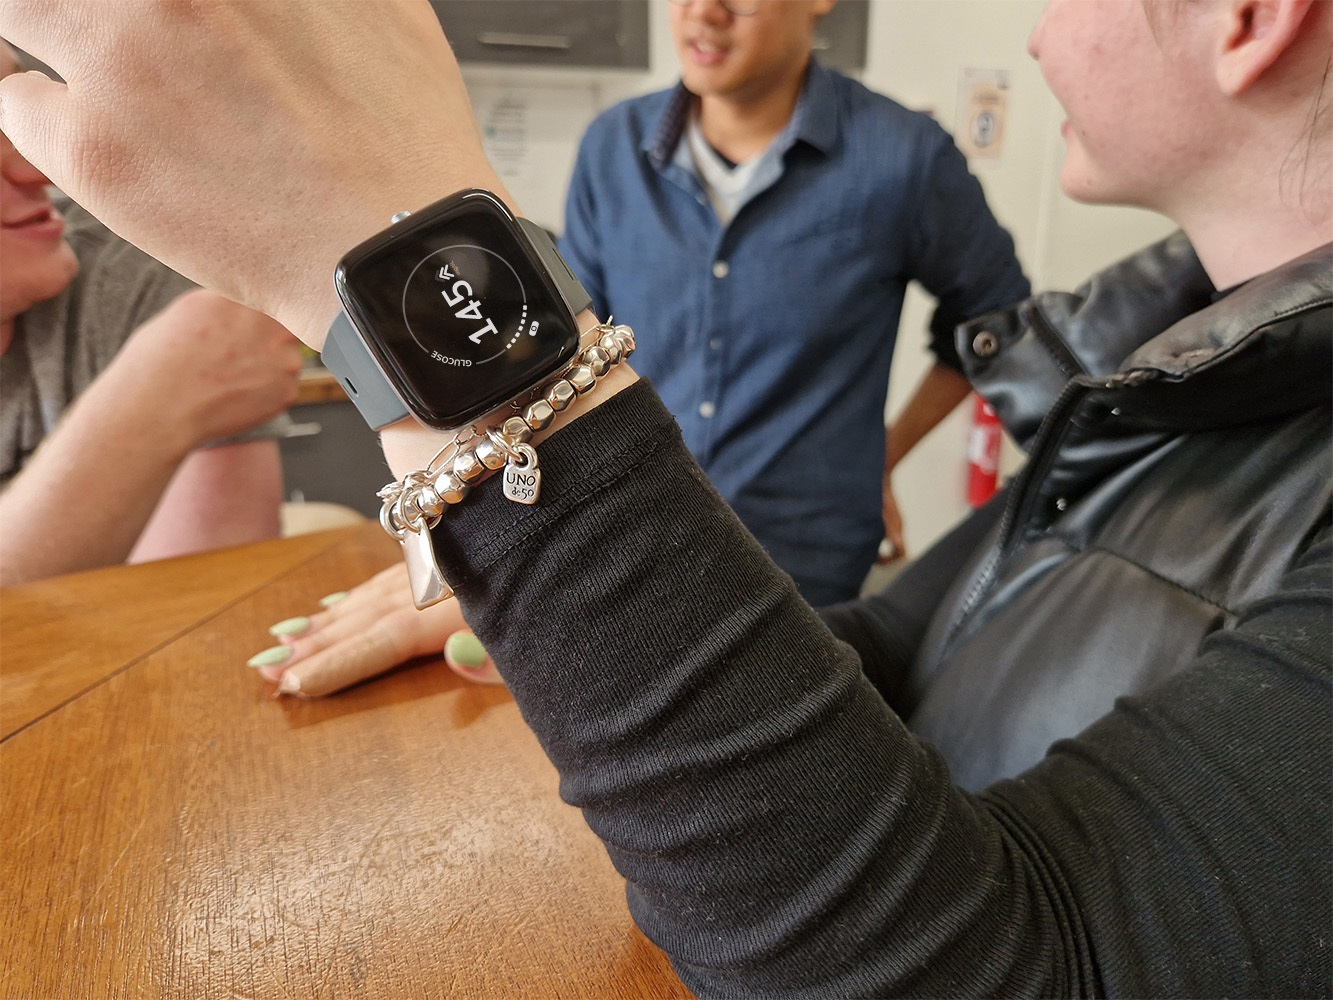 Ni Xiaomi ni Huawei: este smartwatch medirá la glucosa sin que debas  recibir un pinchazo, Actualidad